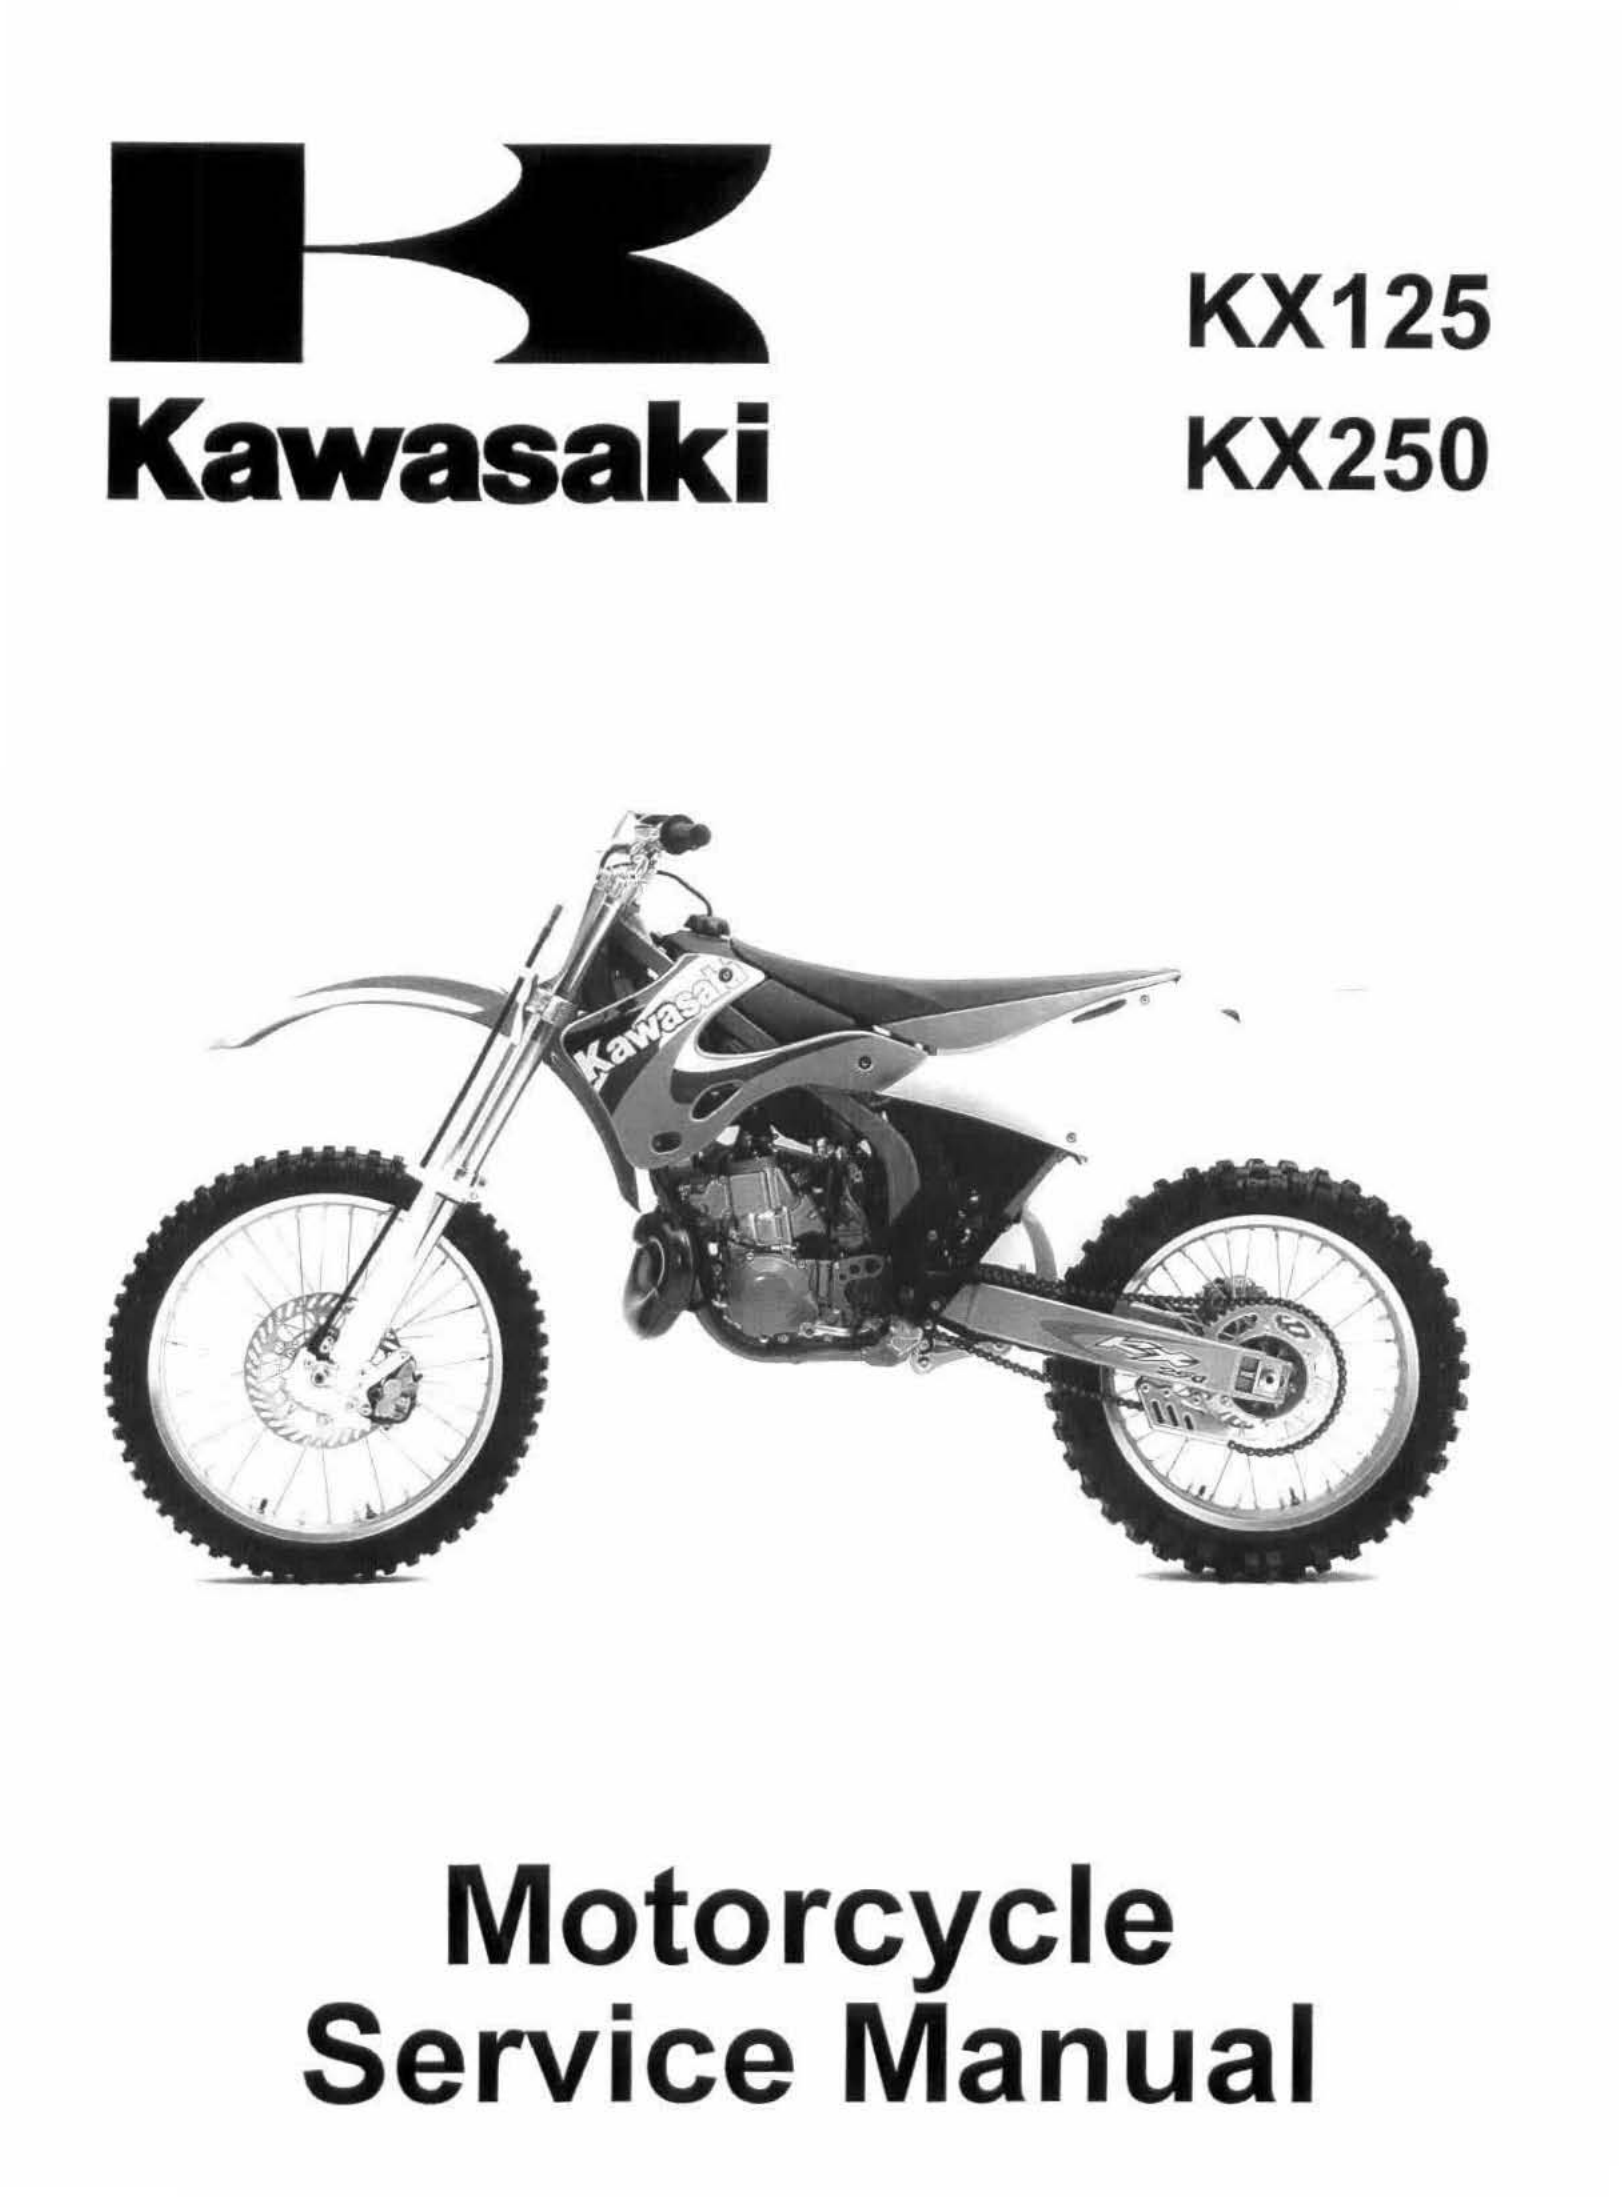 原版英文1999-2002年川崎kx125 kx250维修手册kawasaki kx125 kx250 维修手册插图